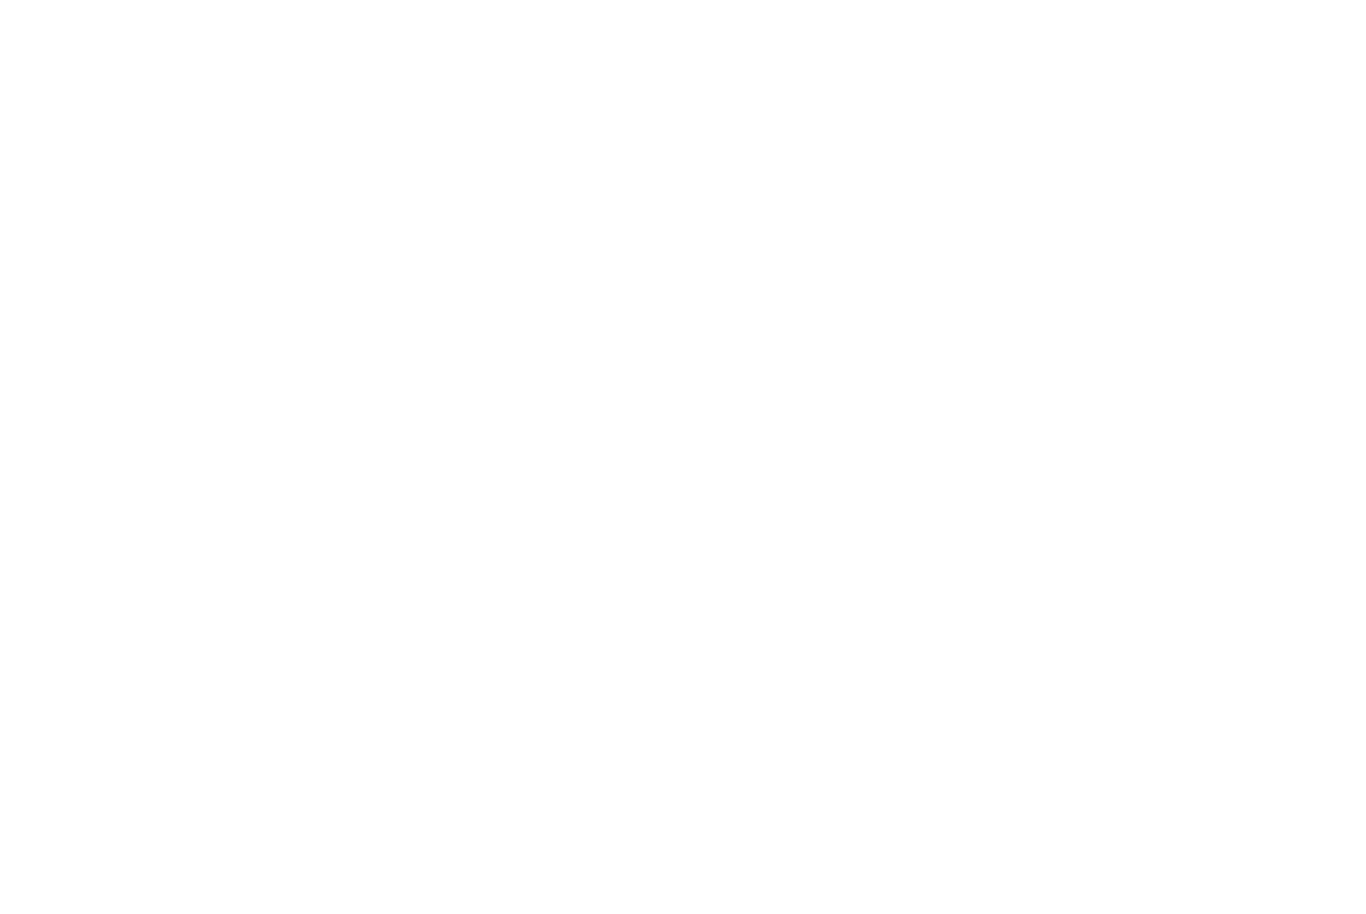 Логотип нефтегазовой компании